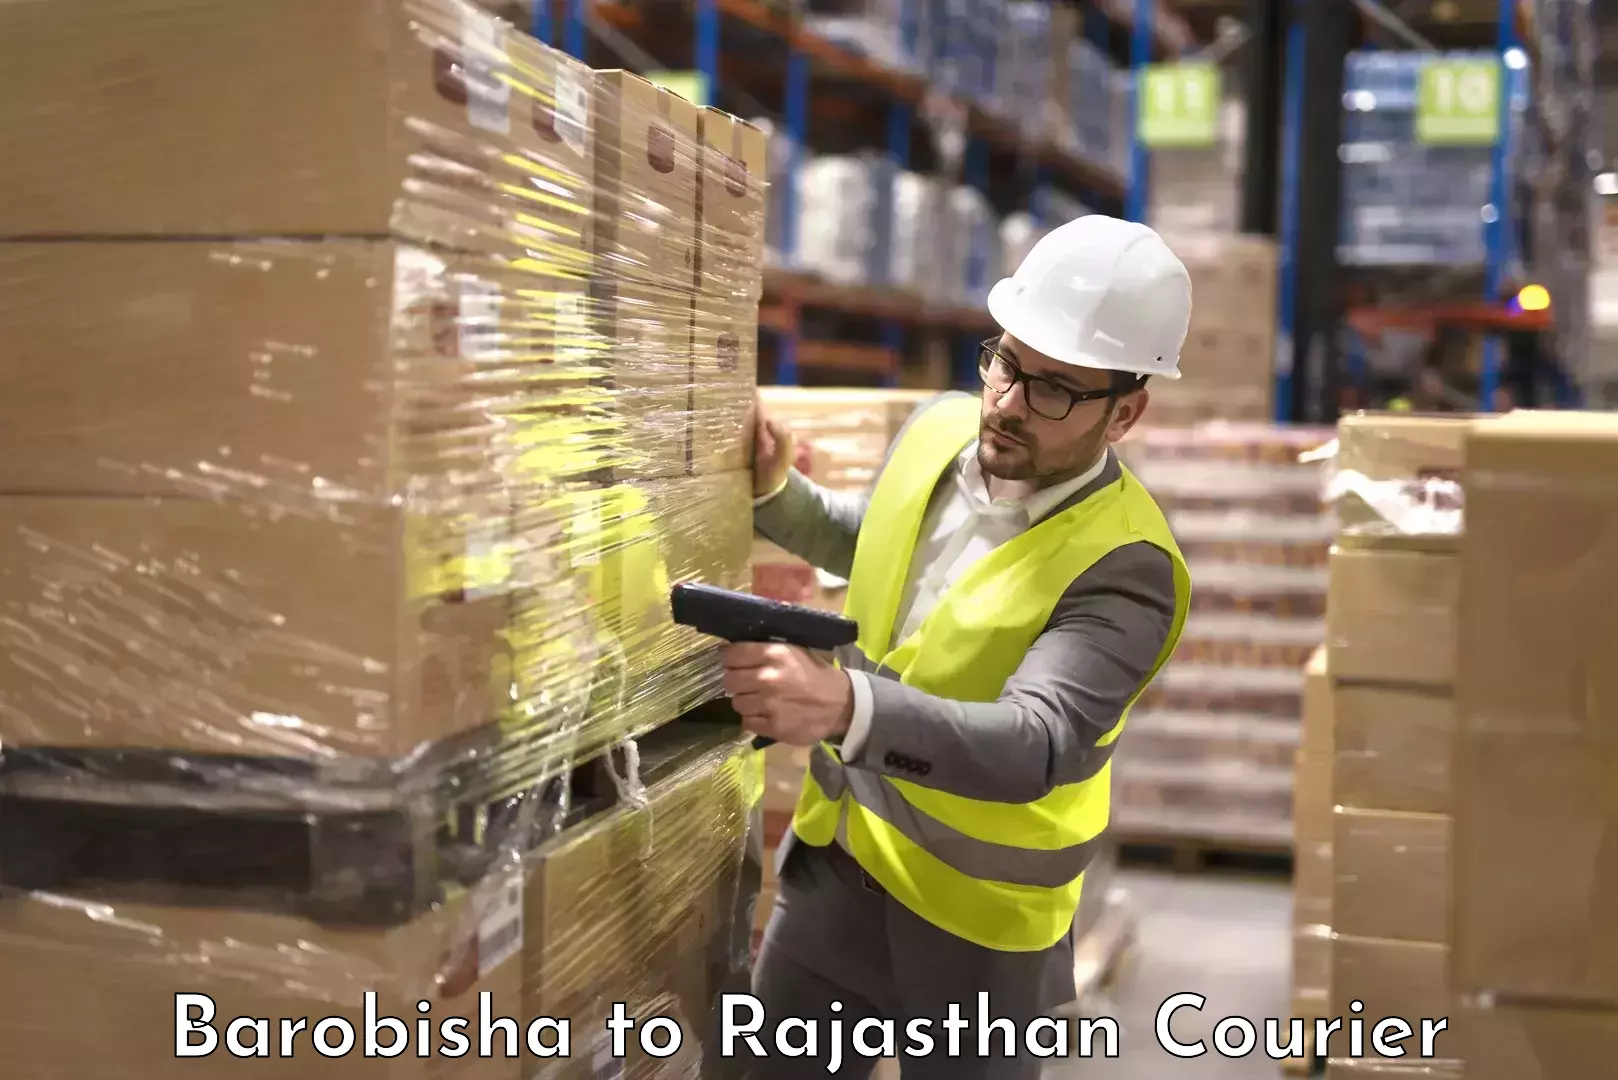 Baggage shipping service Barobisha to Rajasthan